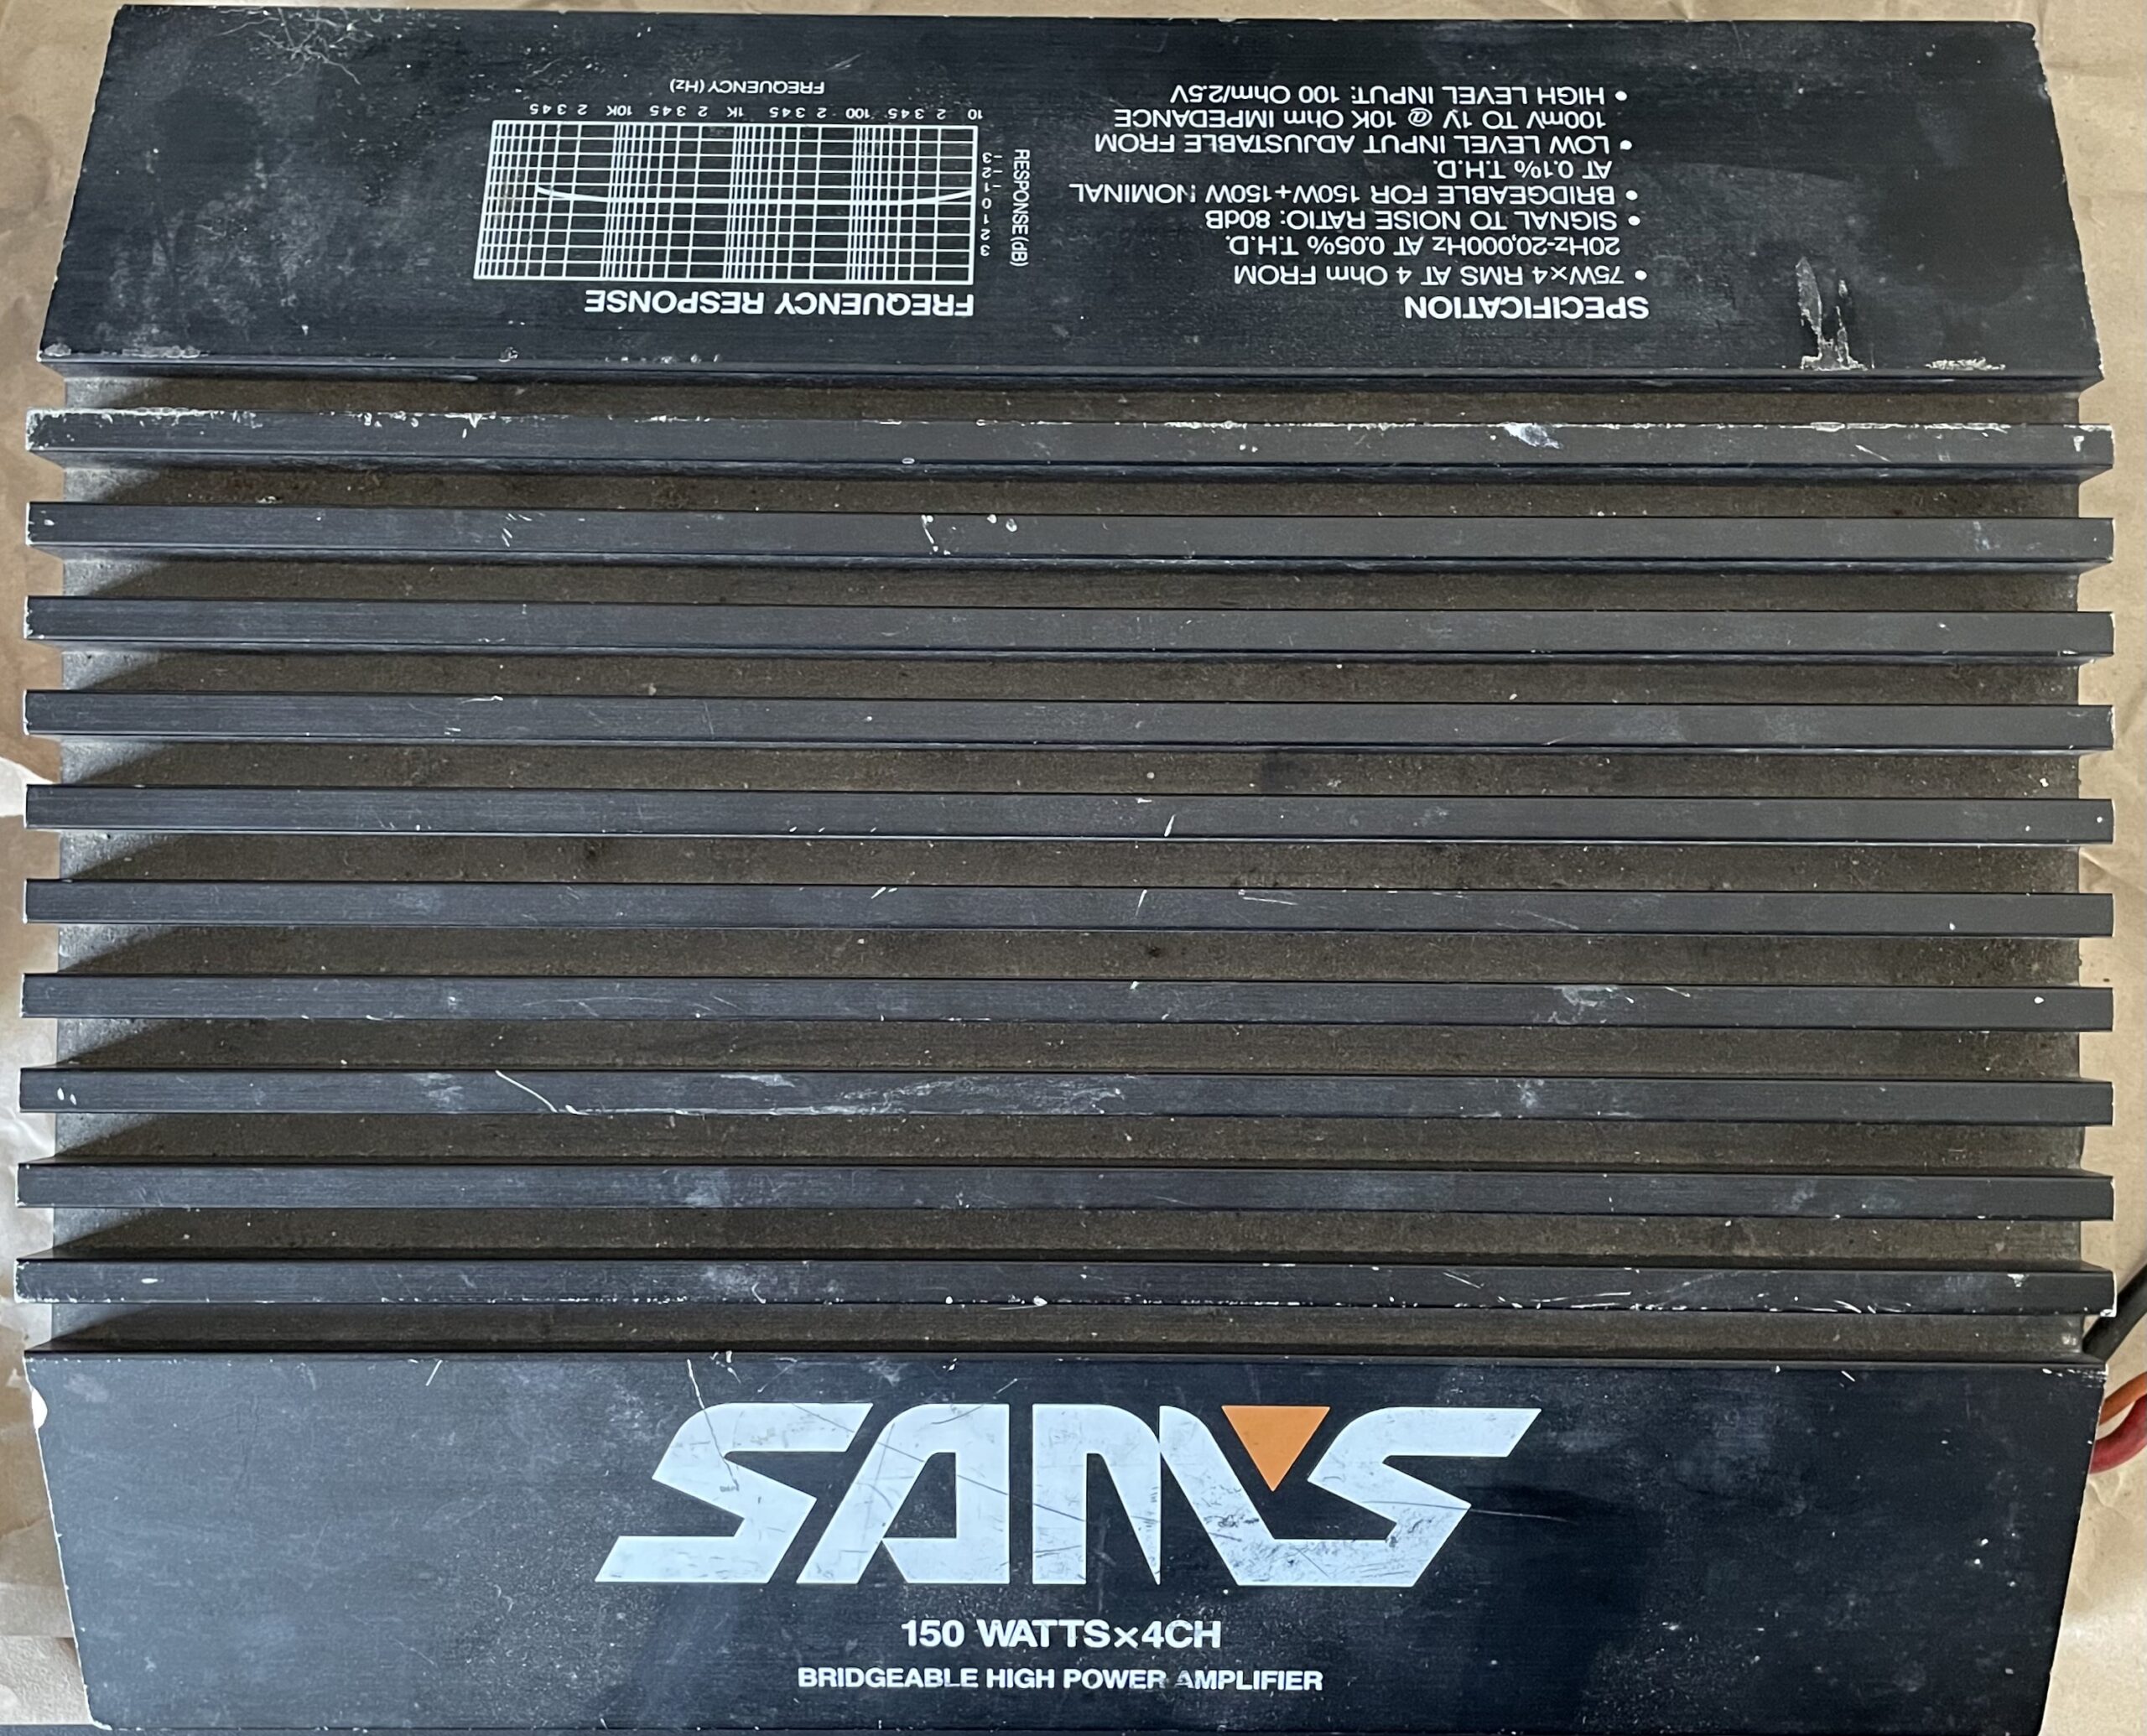 Sam's High Power Amplifier